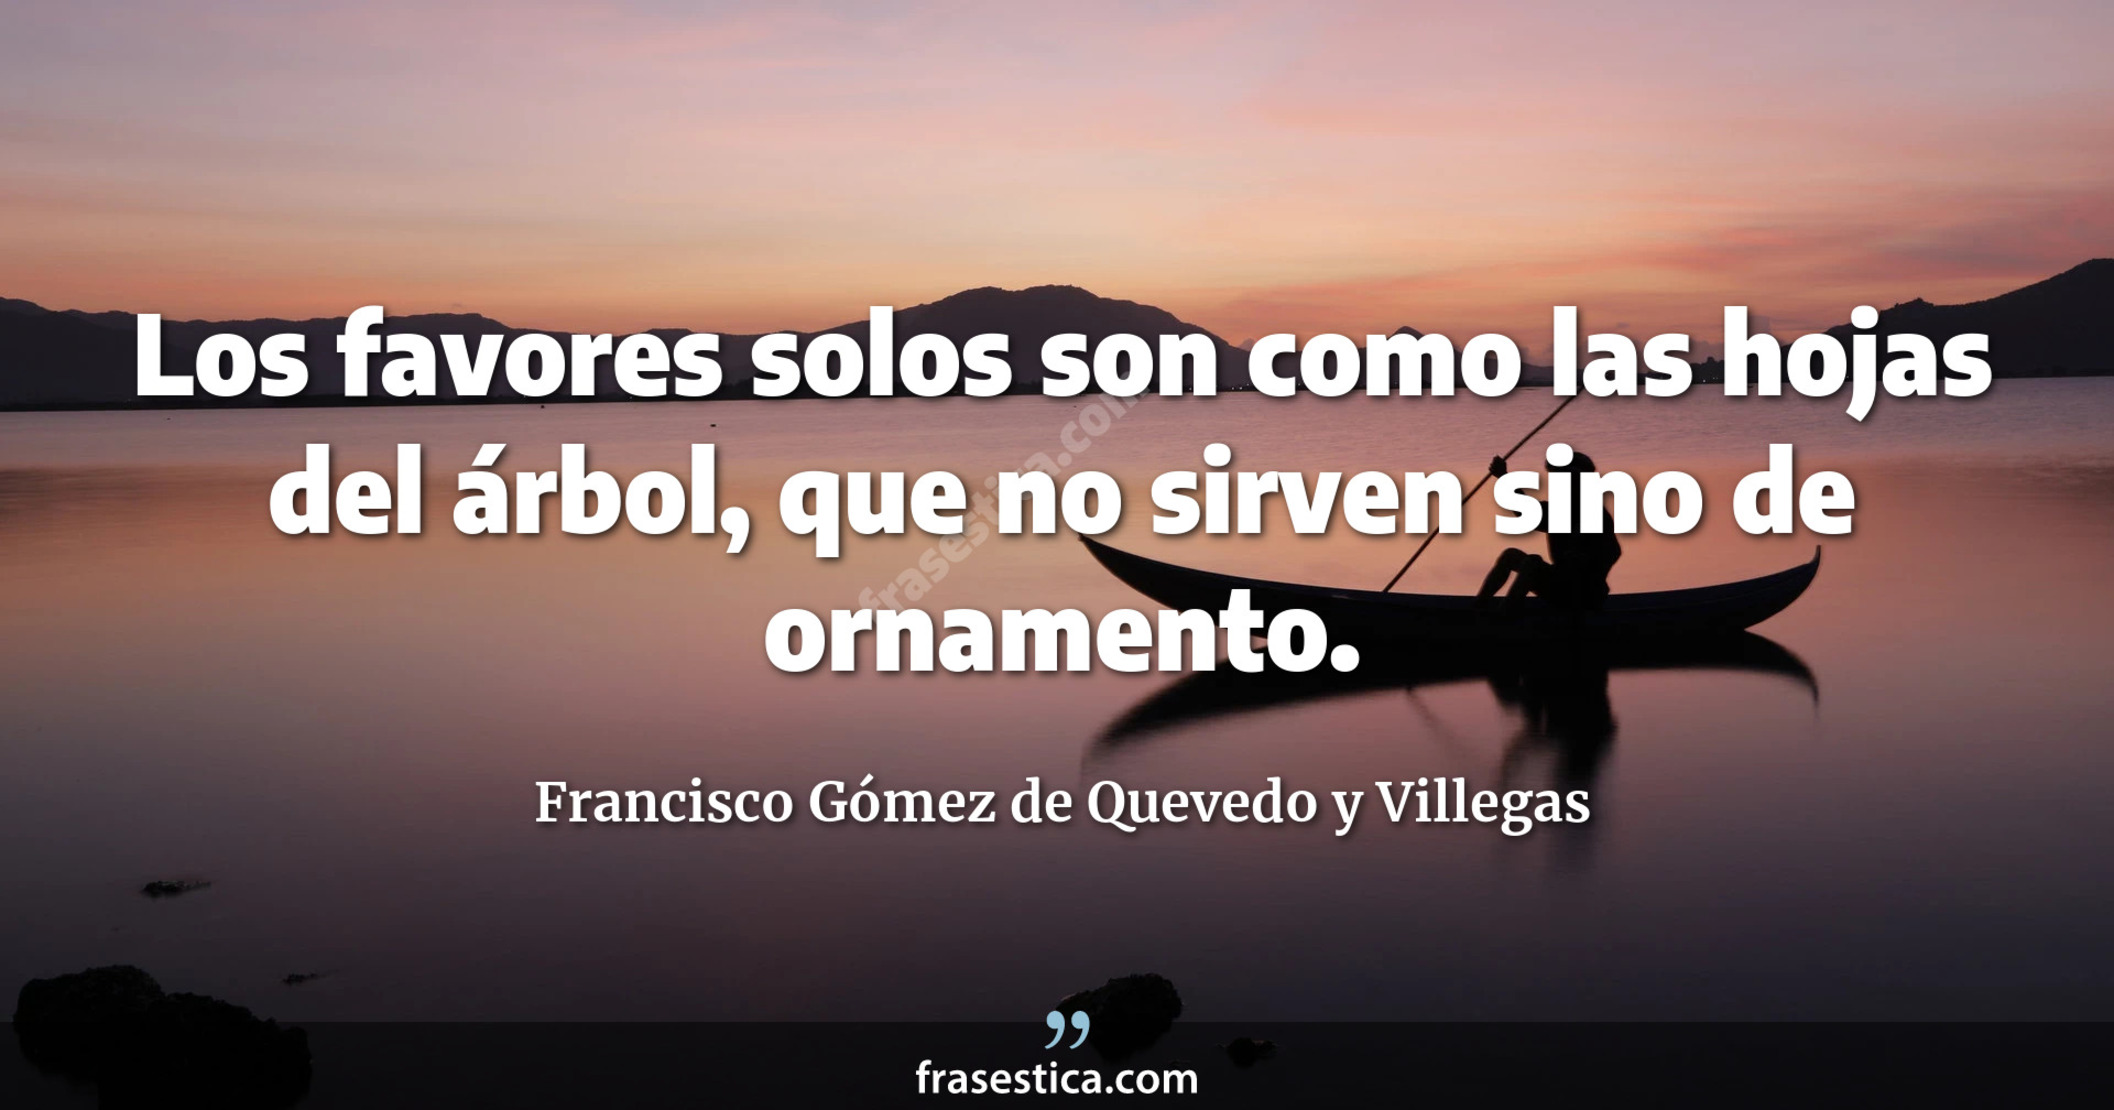 Los favores solos son como las hojas del árbol, que no sirven sino de ornamento. - Francisco Gómez de Quevedo y Villegas